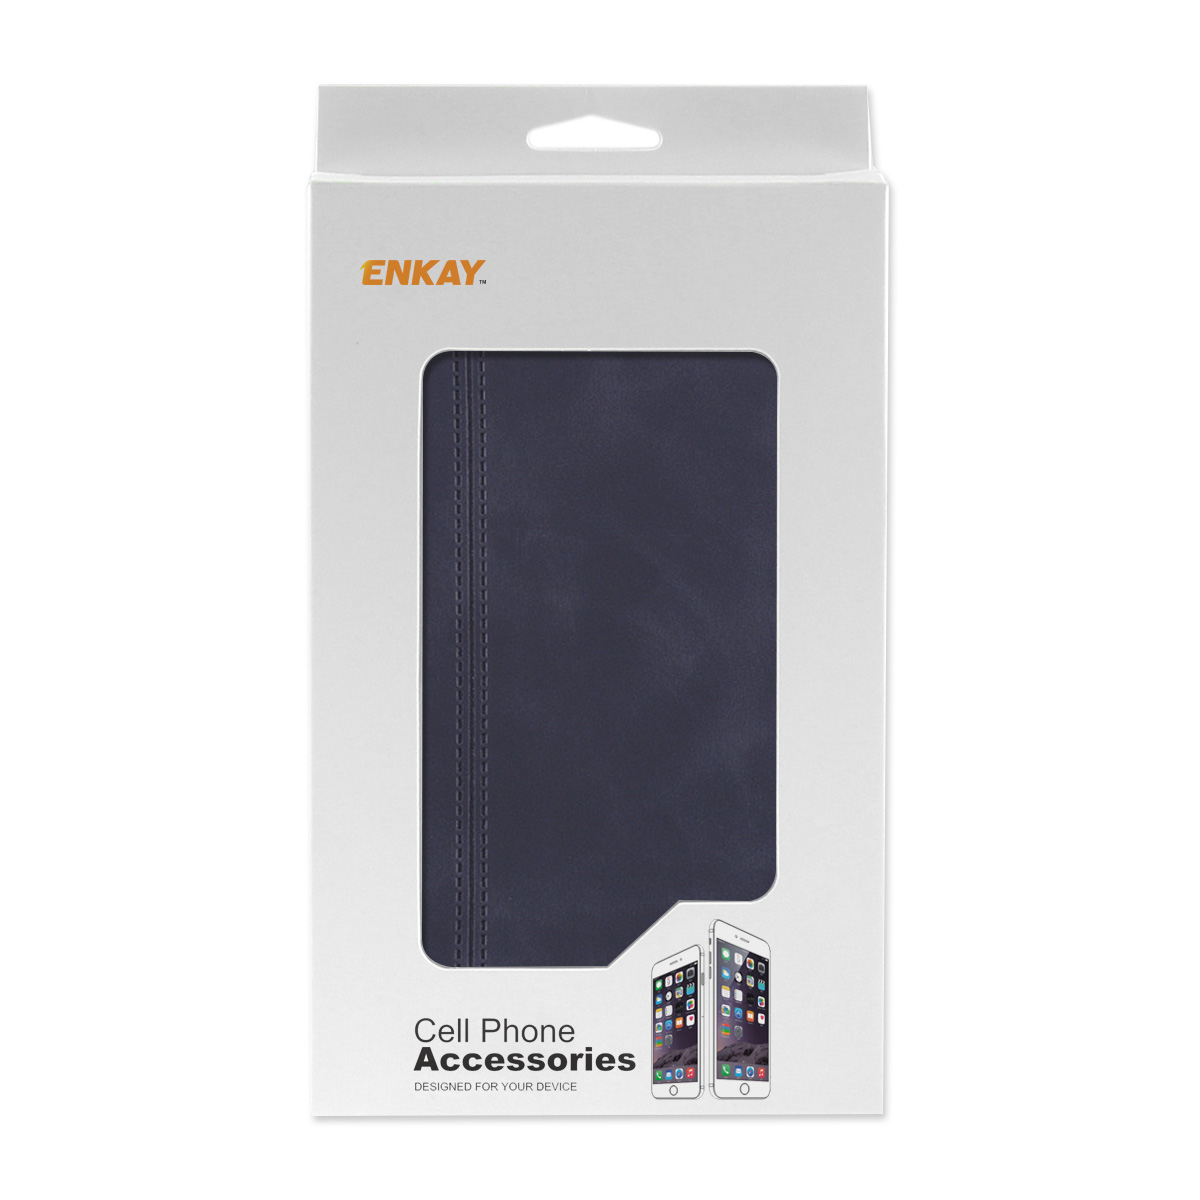 Enkay para iPhone 12 Mini Caso Business flip magnético com suporte para cartão de couro PU + TPU protetor de capa completa Caso